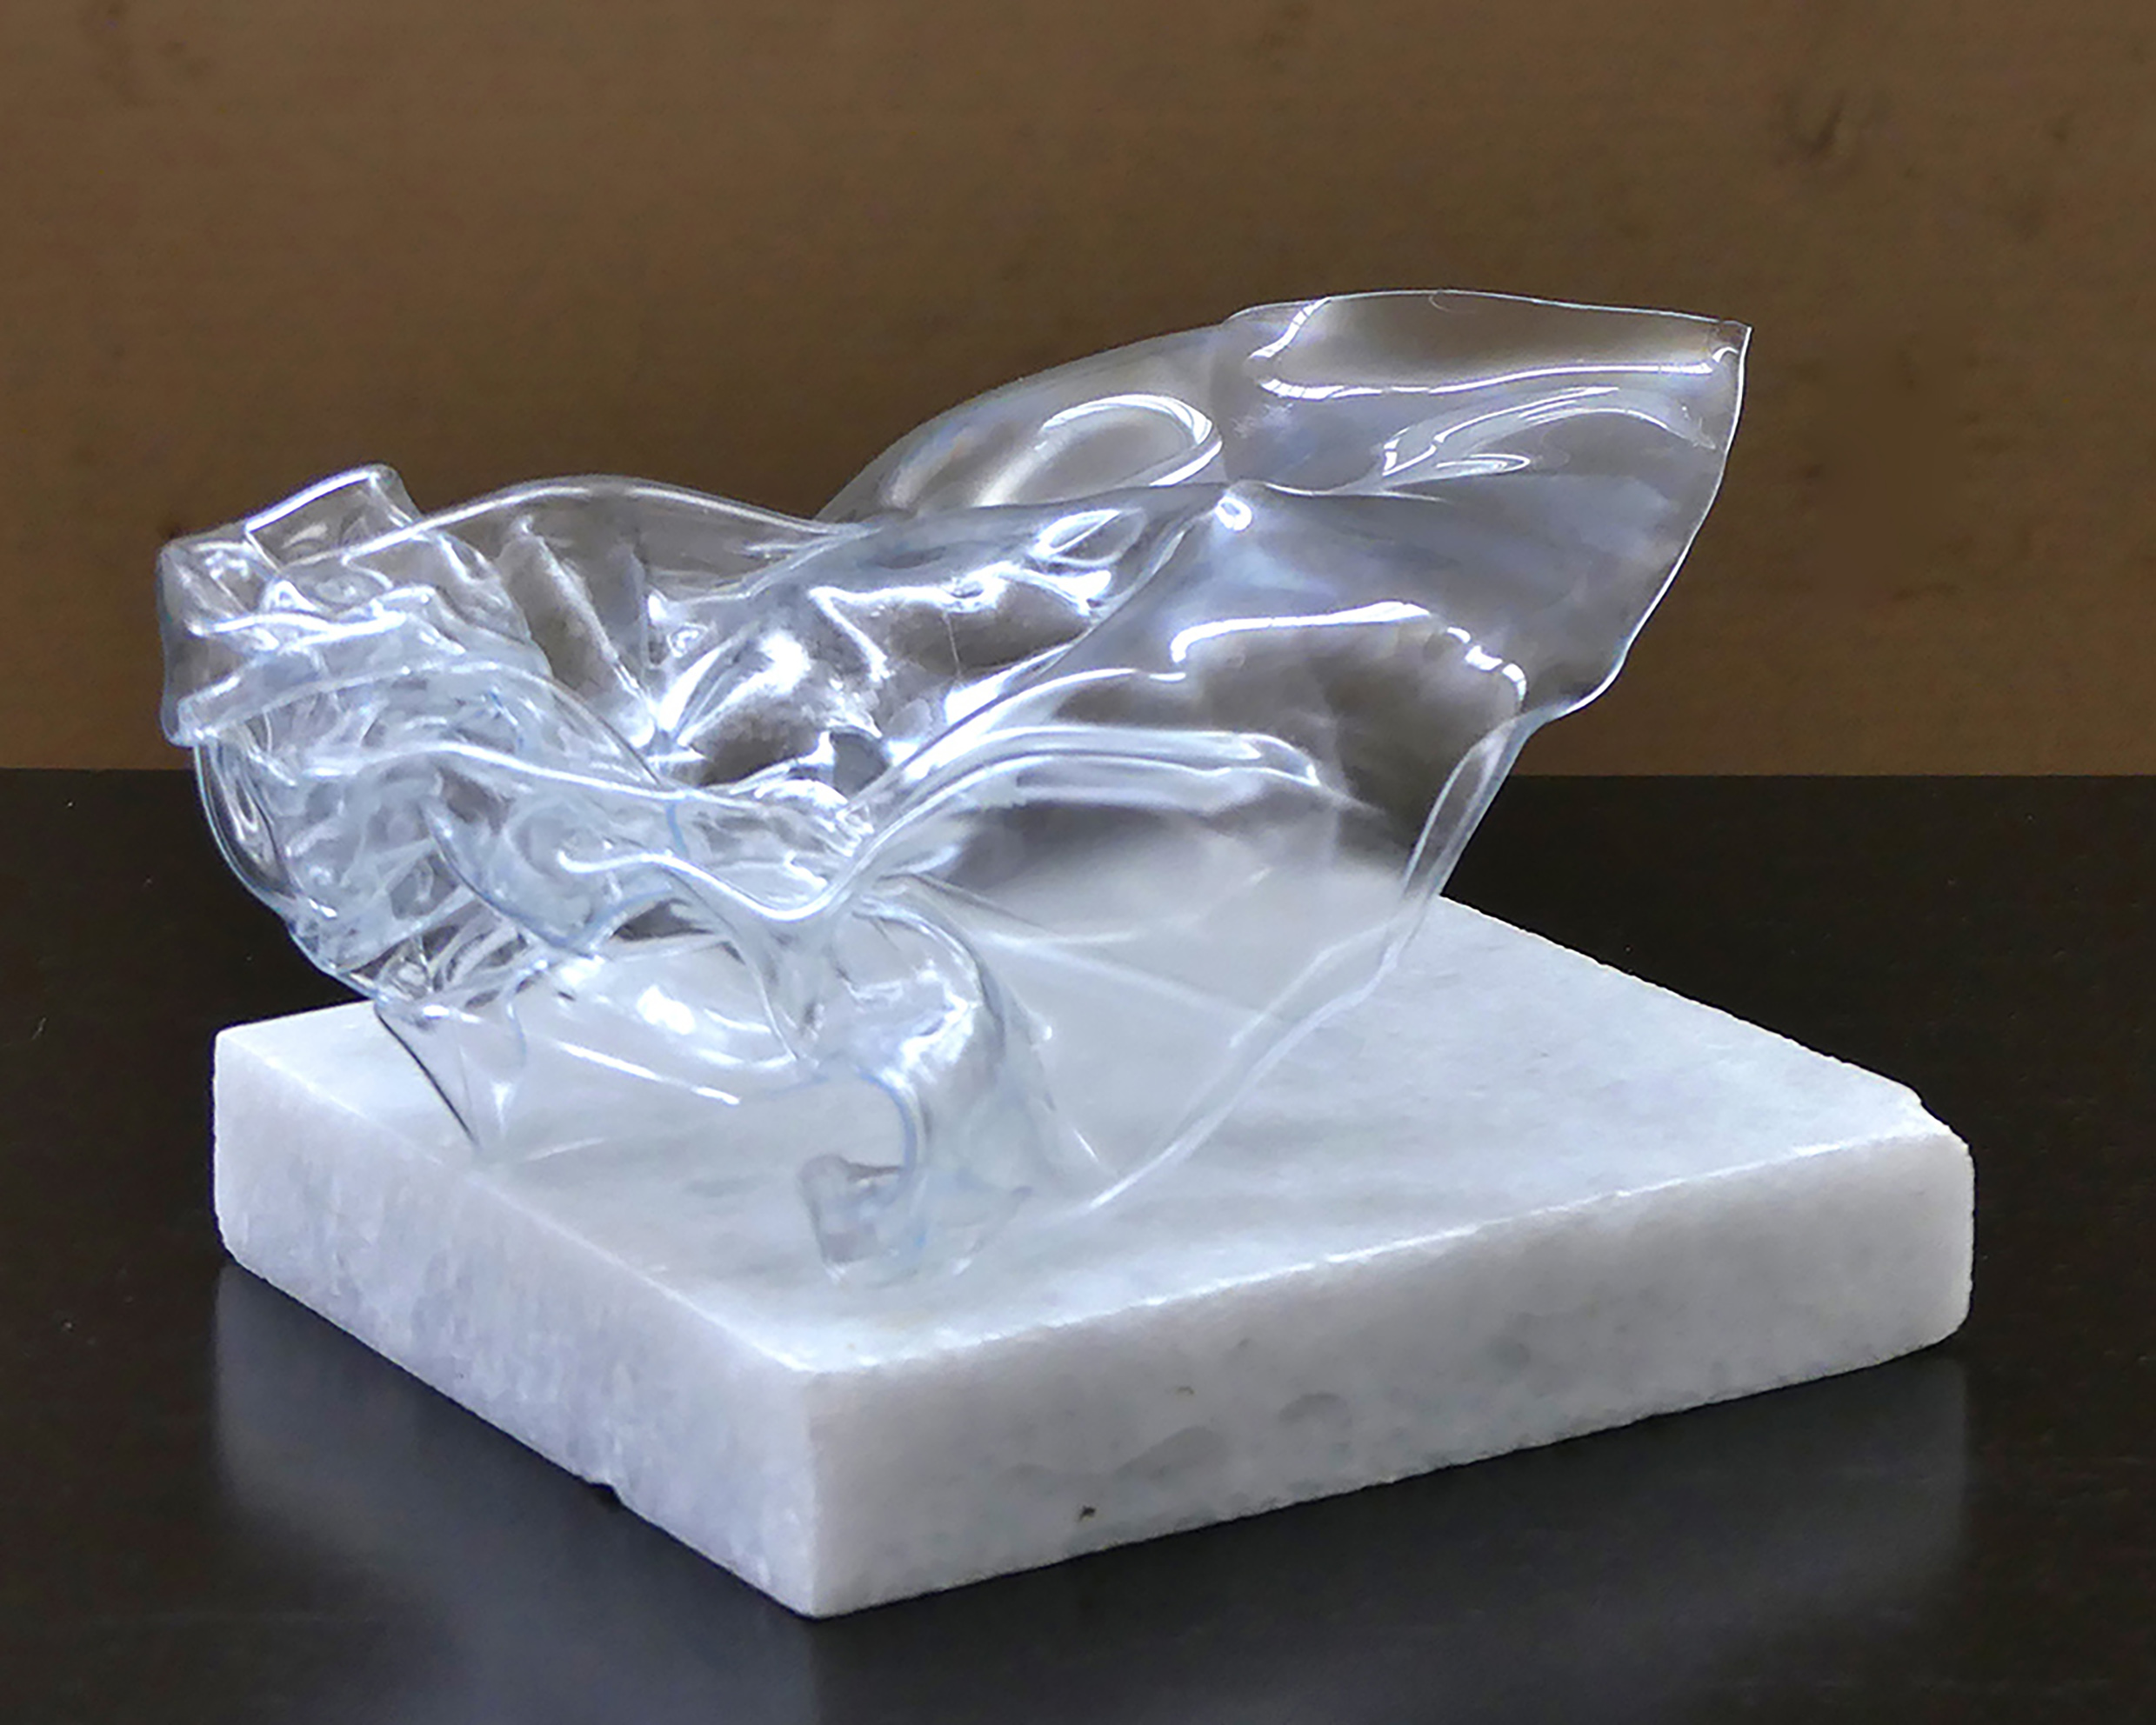 Dominique Defontaines - Art contemporain - sculpture - sculpter l'eau - Plasticien